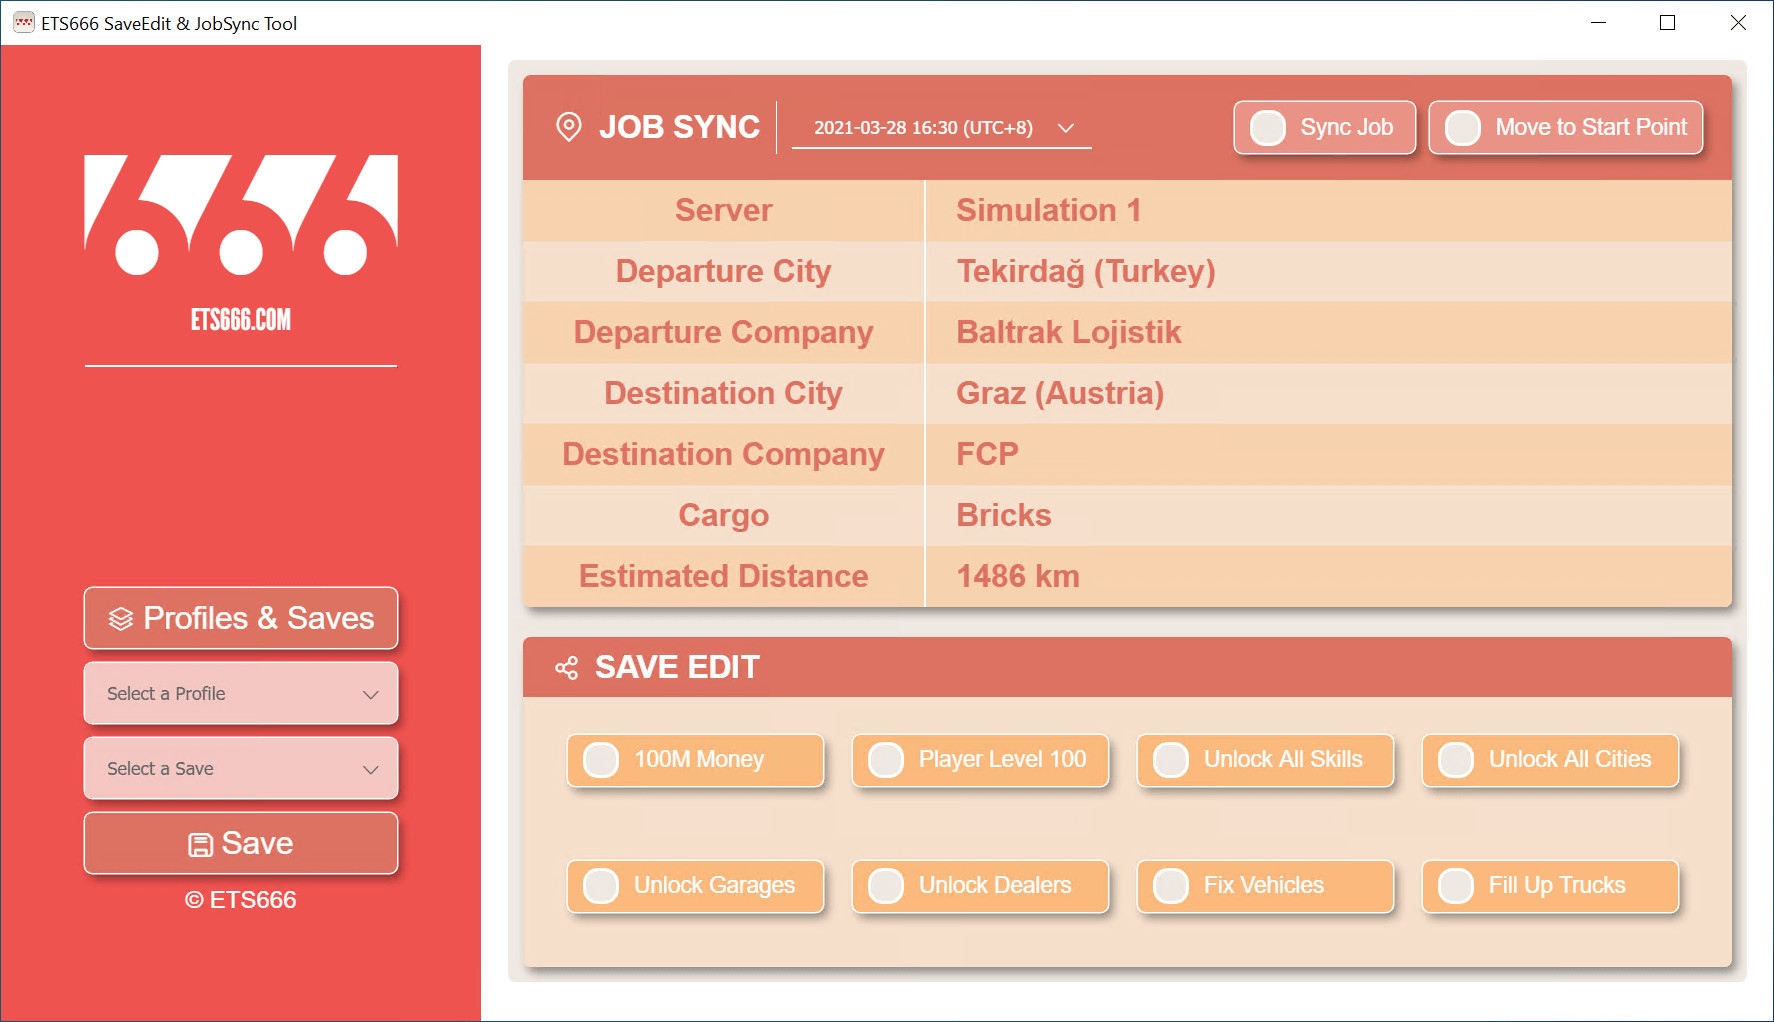 SaveEdit & JobSync Tool